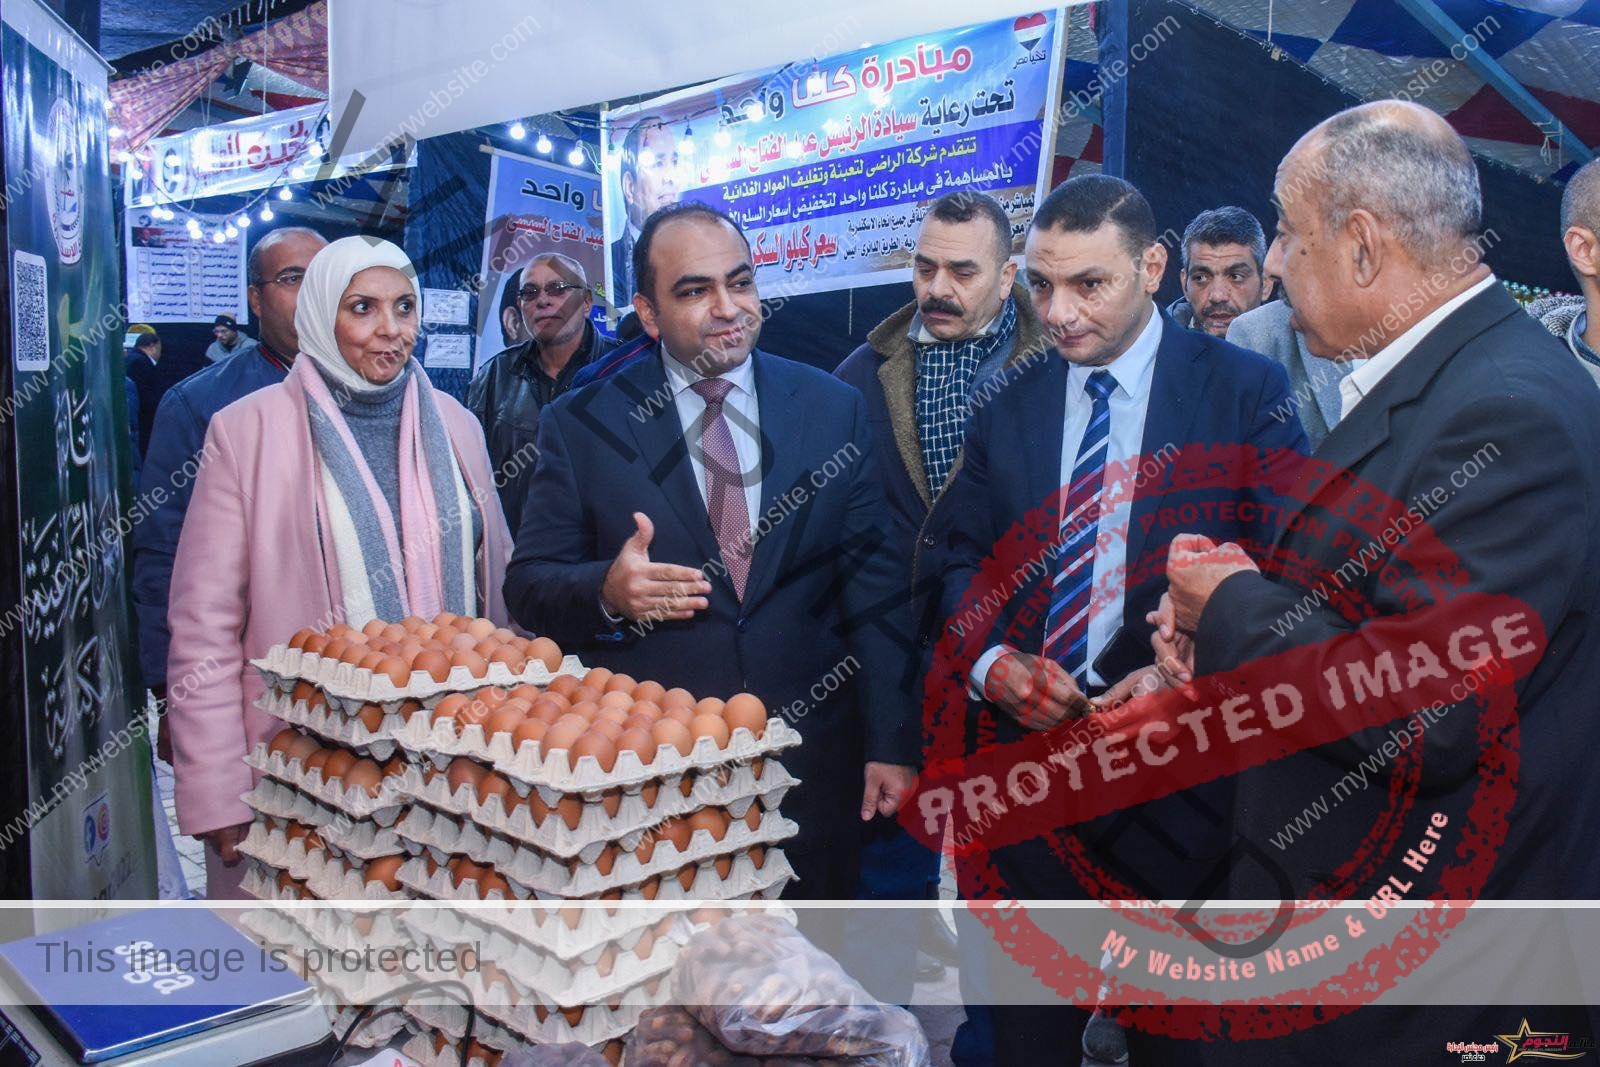 نائب محافظ الإسكندرية يفتتح معرض "أهلا رمضان" لبيع السلع بأسعار مخفضة بمنطقة سيدي جابر بنطاق حي شرق